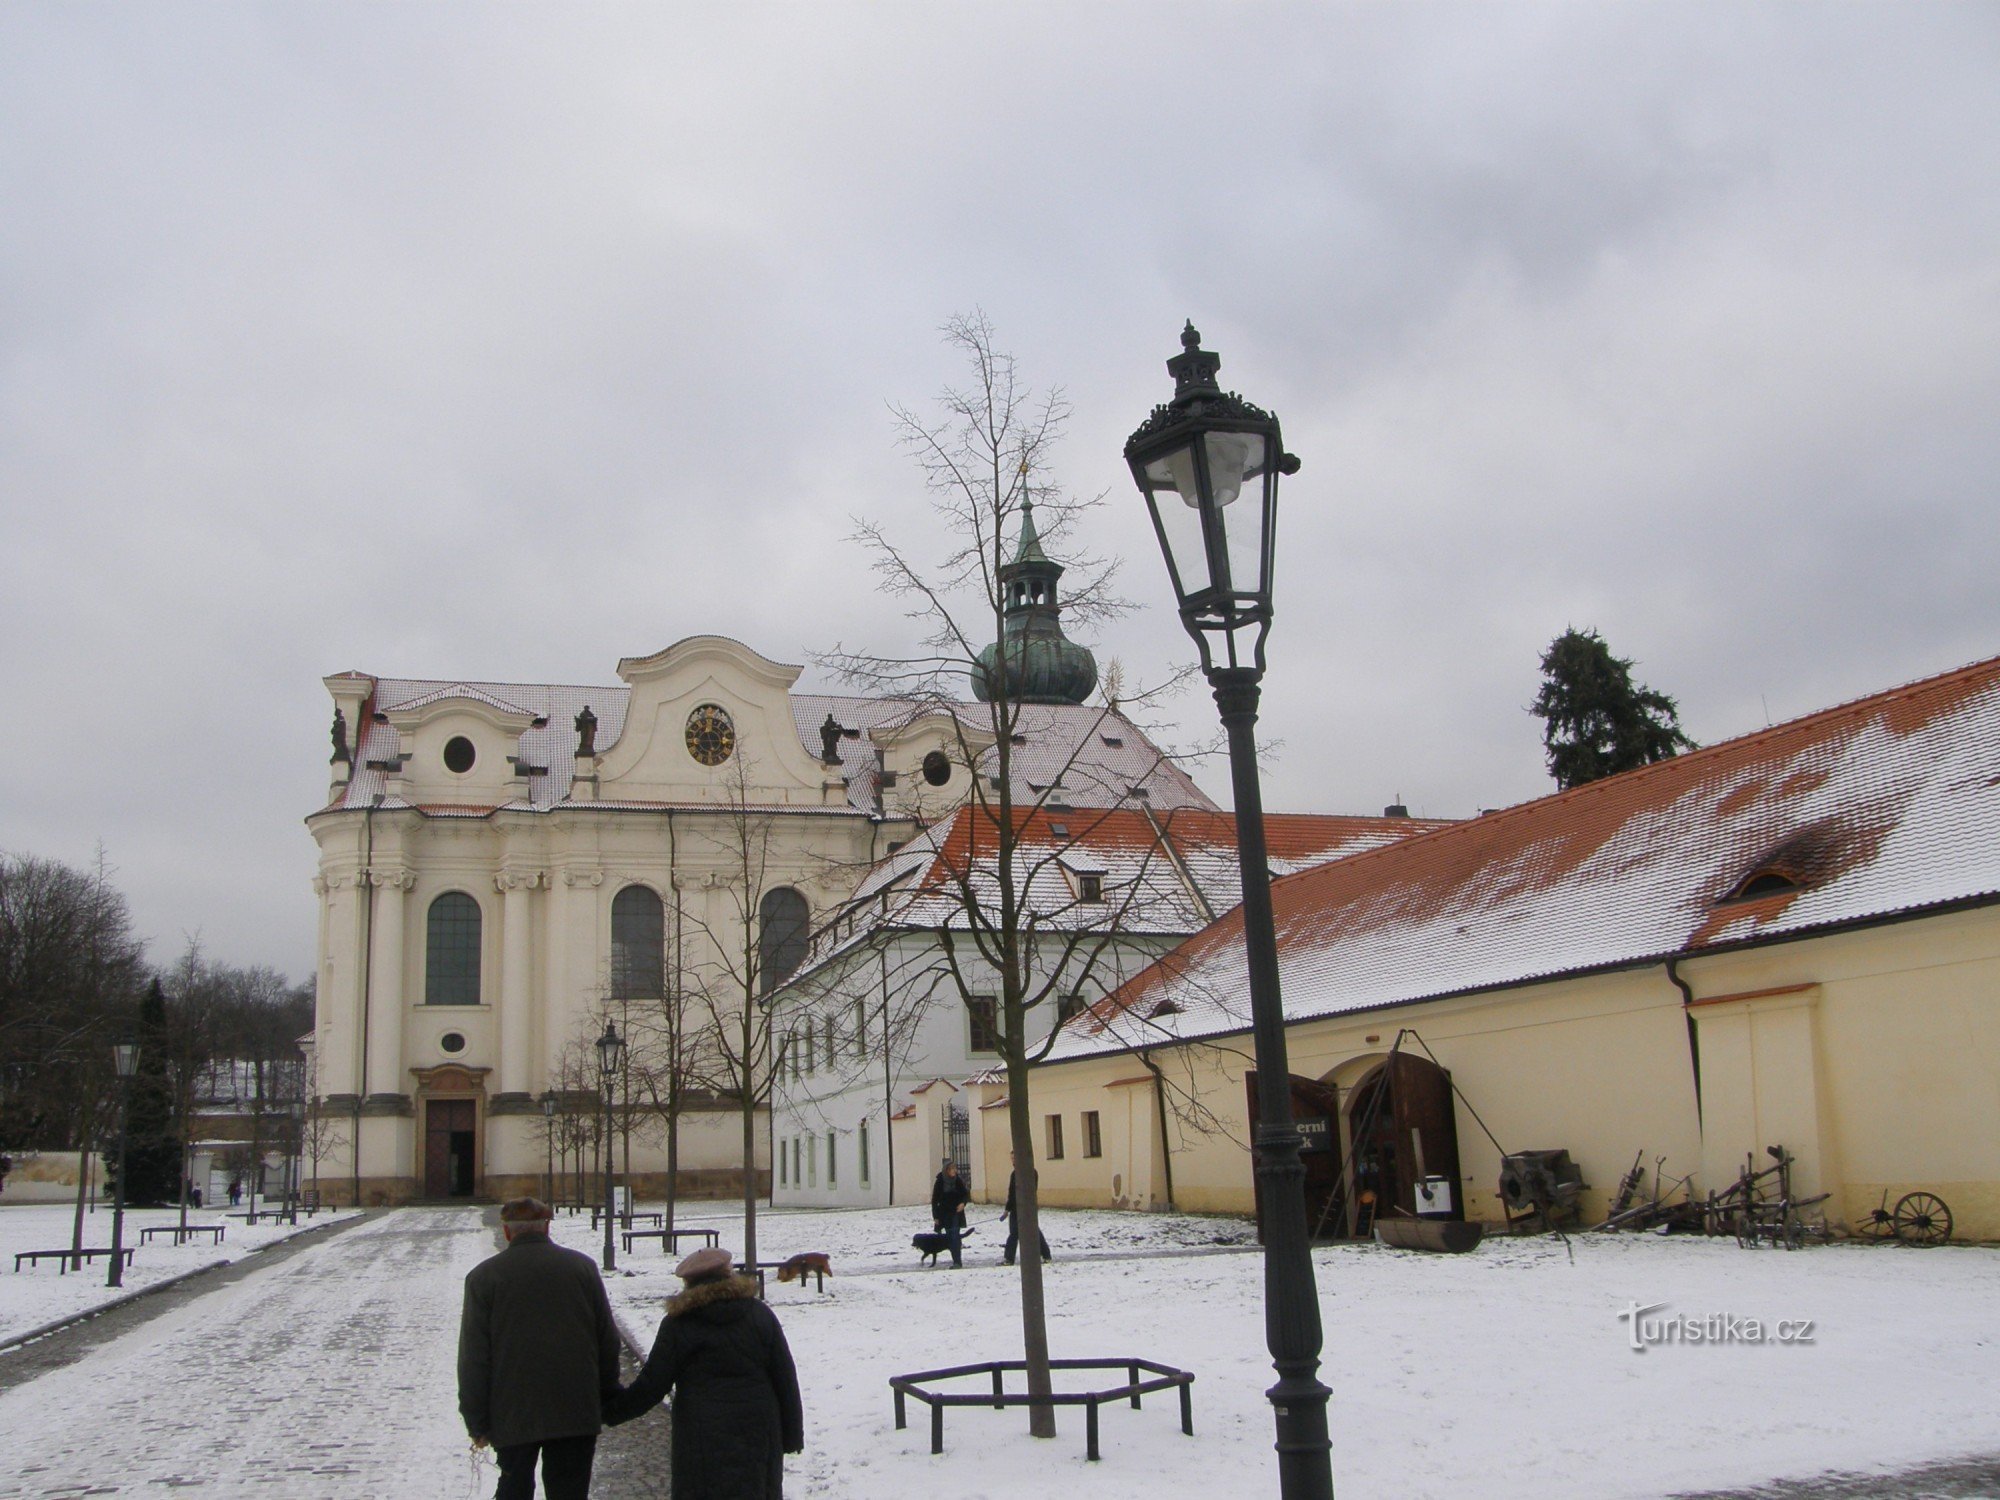 ブジェヴノフ修道院は、大都会の真ん中にある静かなオアシスです